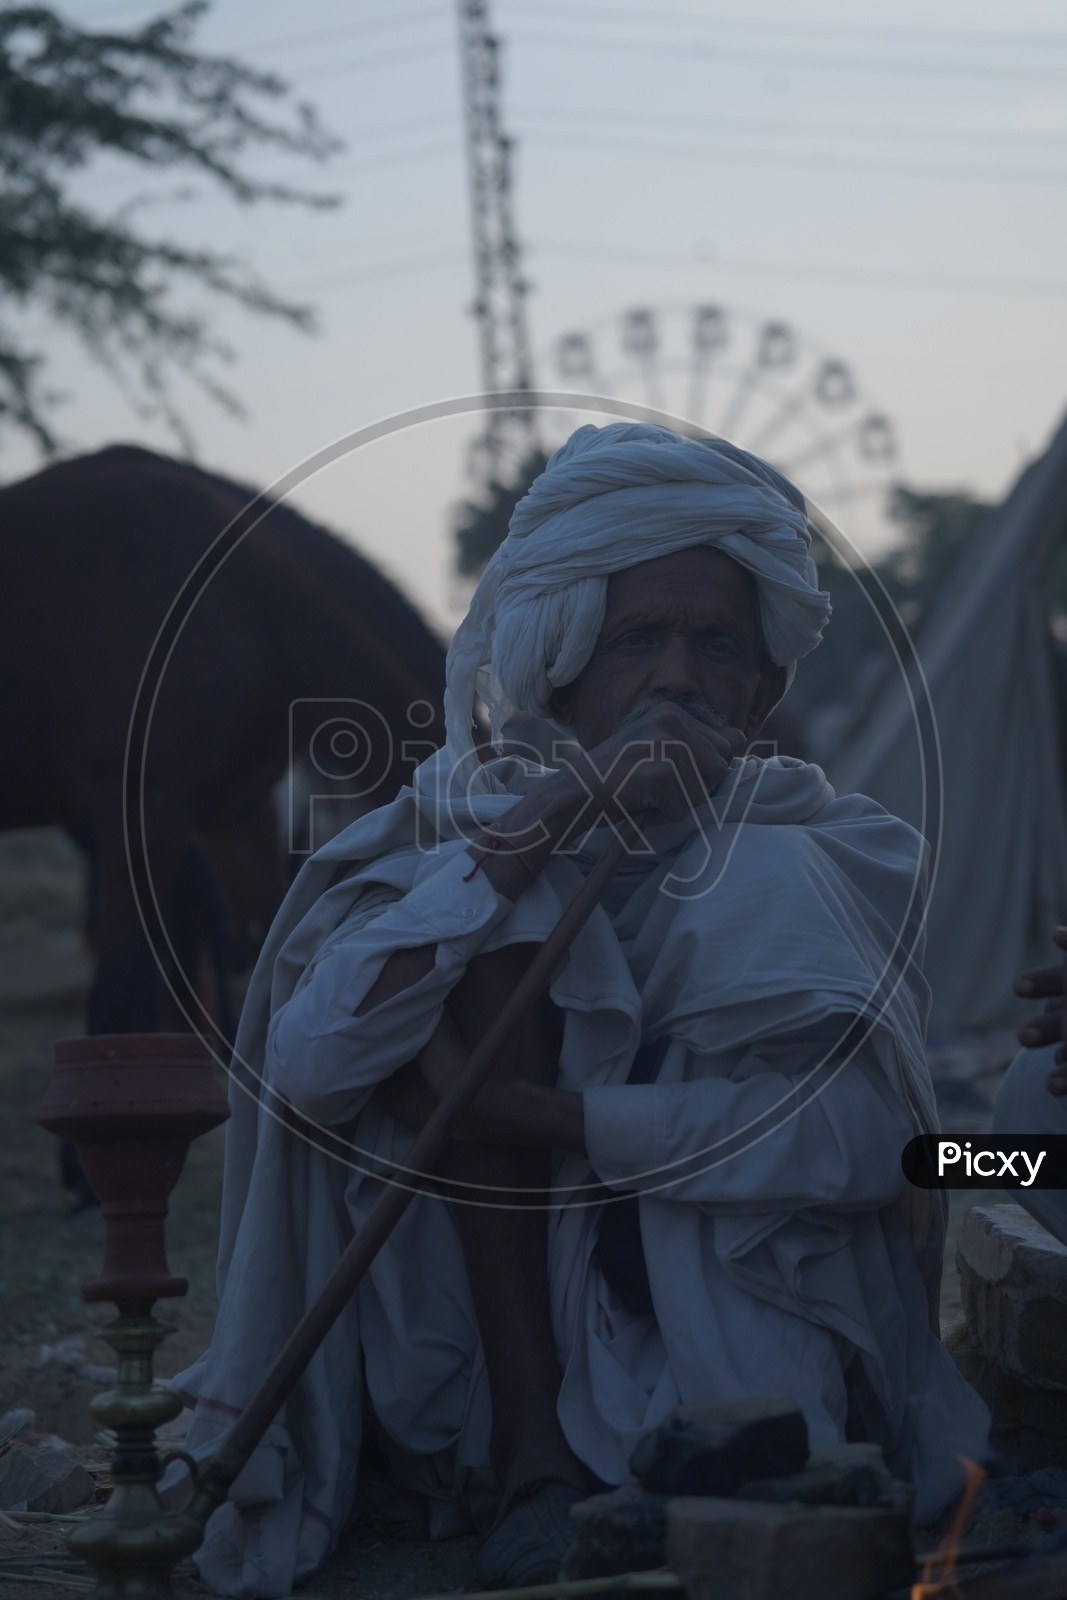 Rajasthani Old man at Pushkar Camel Fair